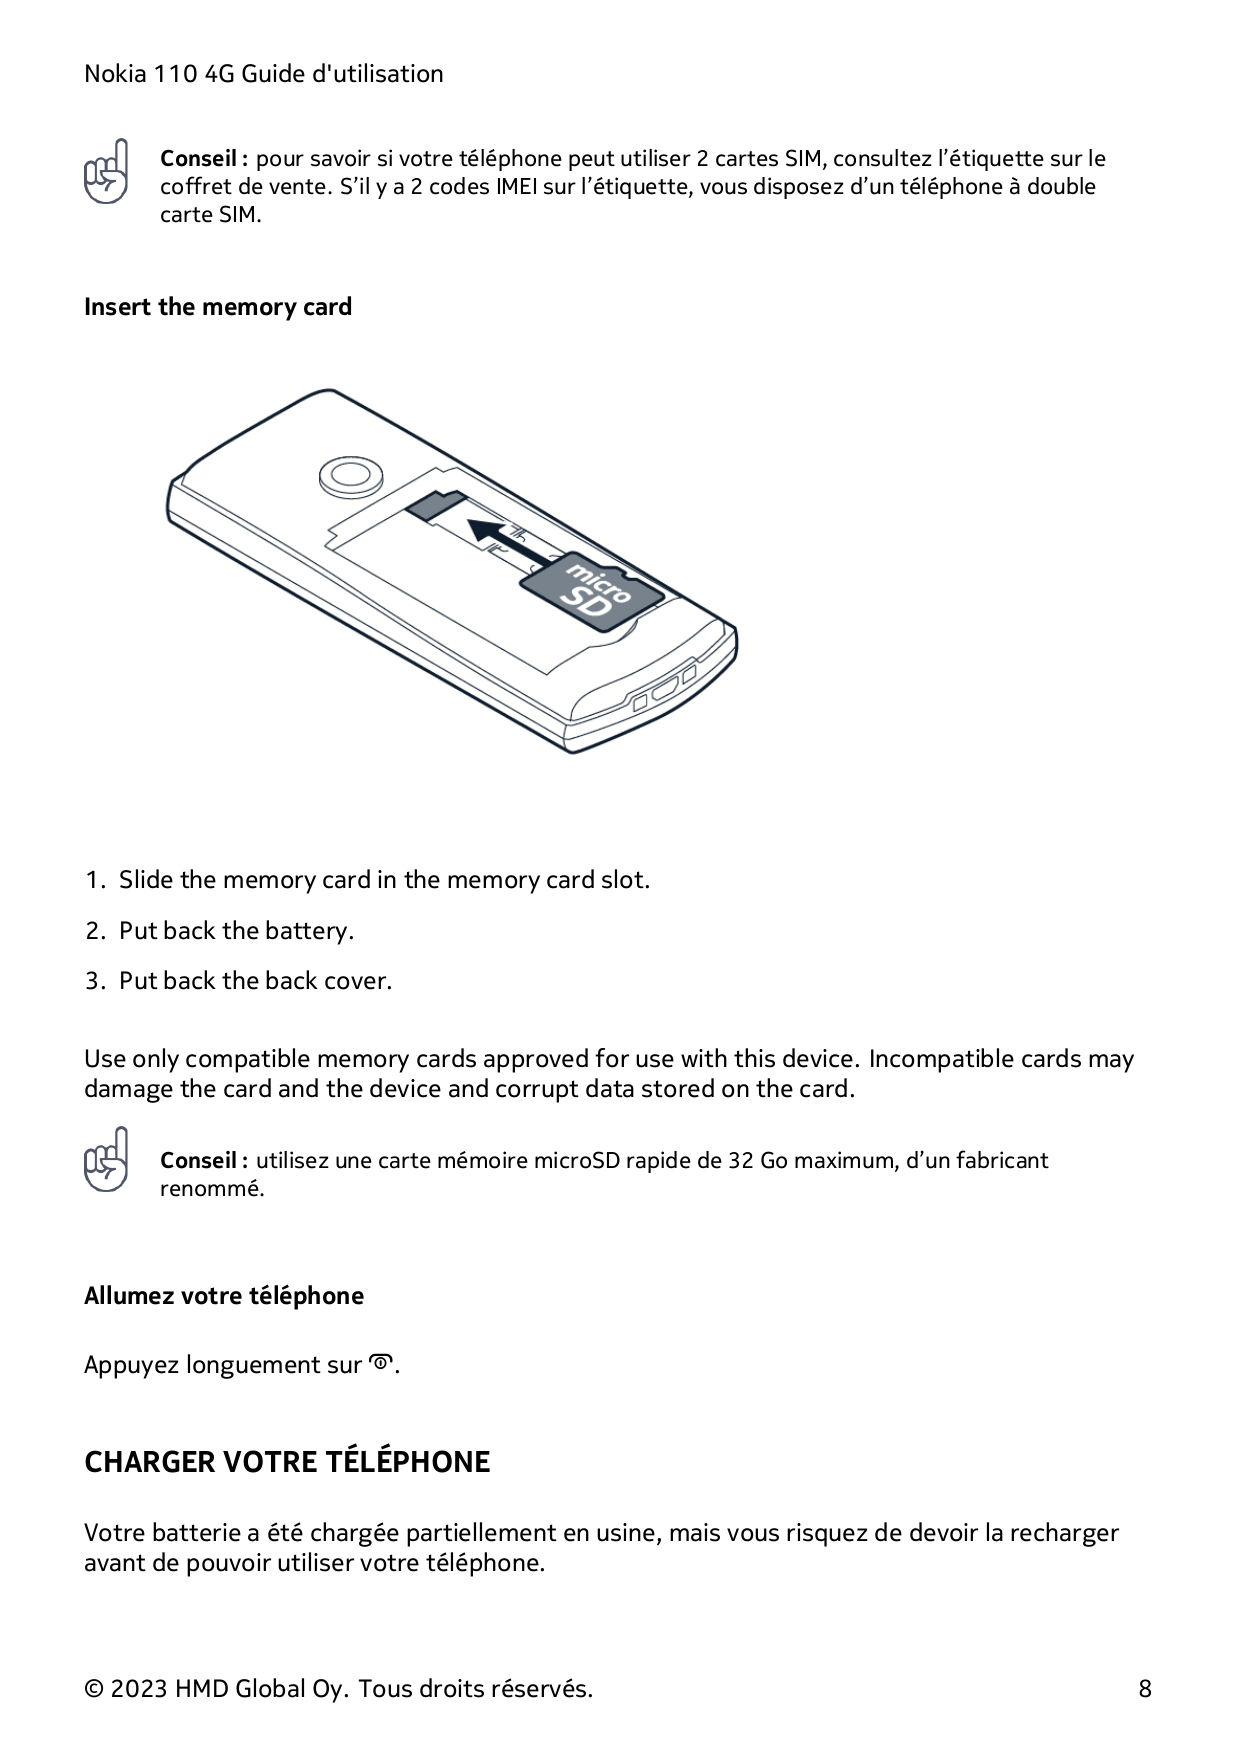 Nokia 110 4G Guide d'utilisationConseil : pour savoir si votre téléphone peut utiliser 2 cartes SIM, consultez l’étiquette sur l